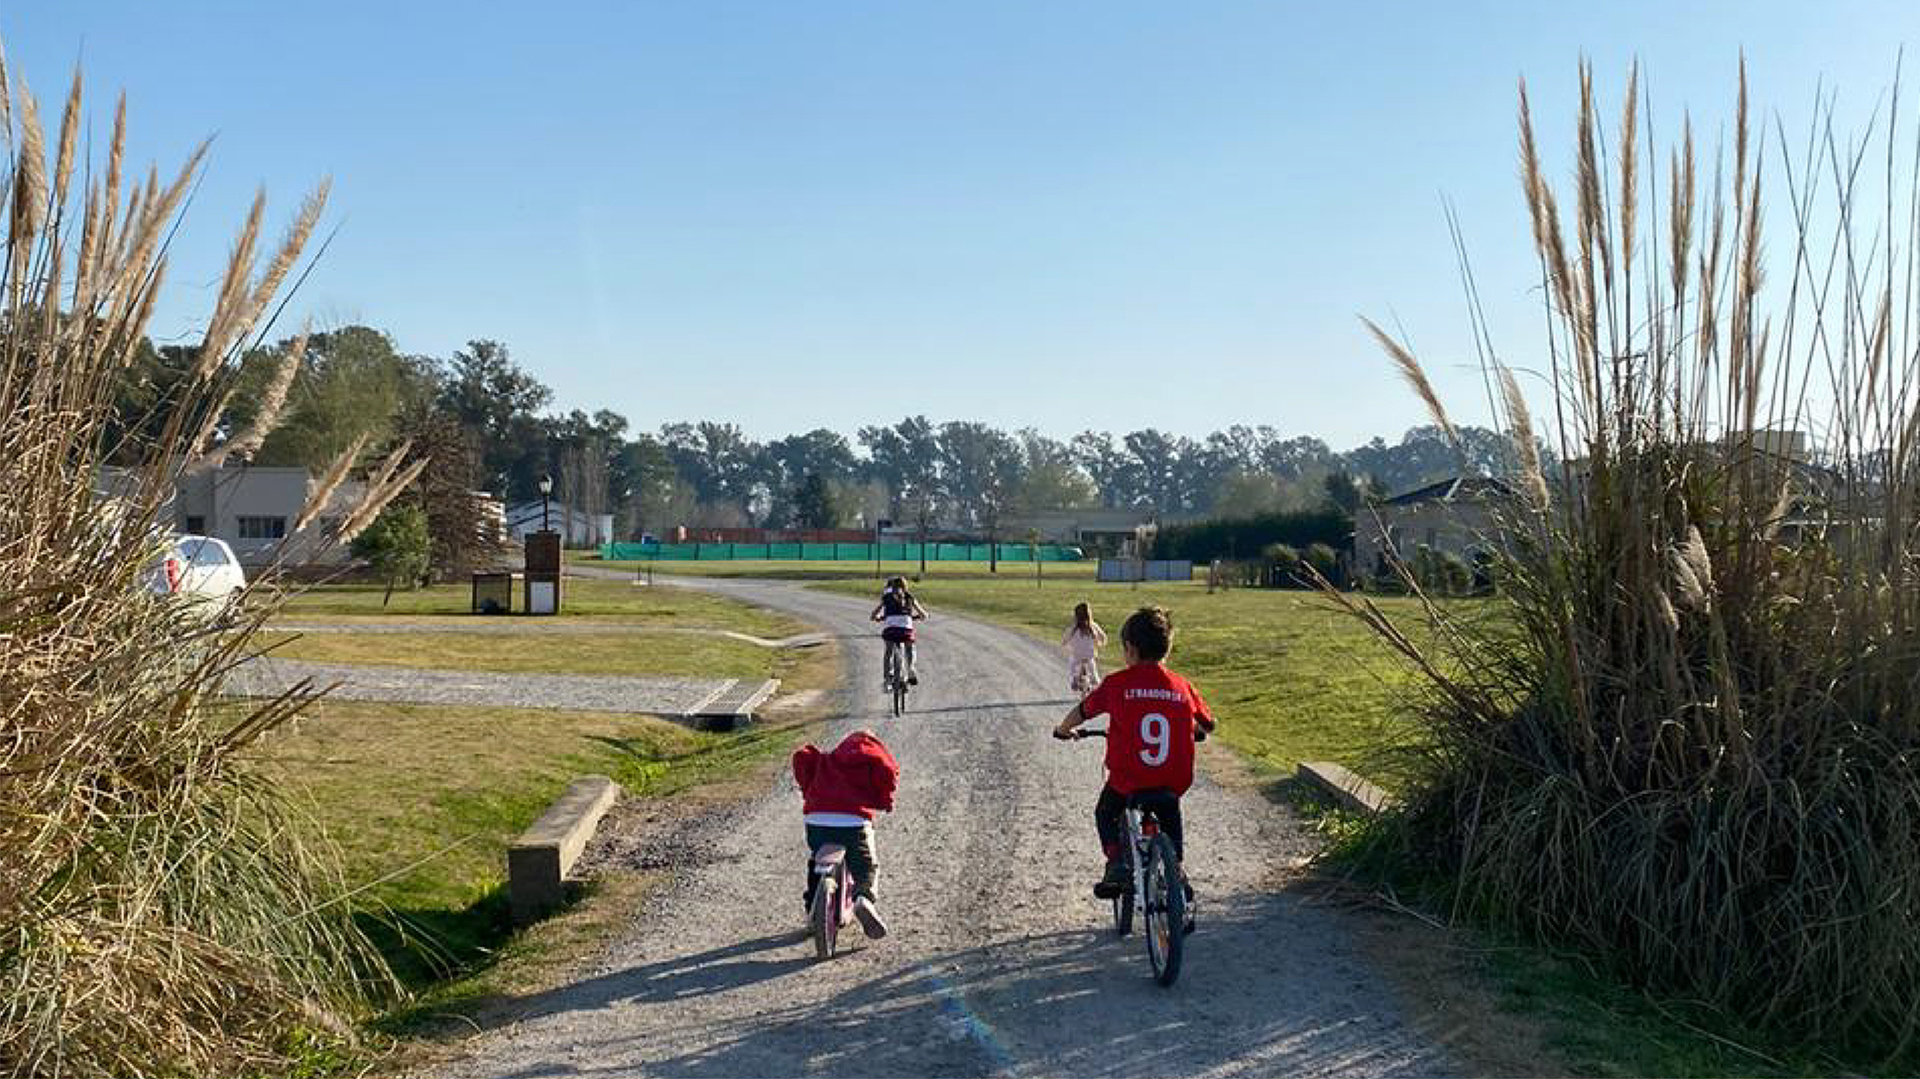 Andar en bicicleta es común por caminos y senderos de los proyectos de chacras que están a más de 70 km de la Capital